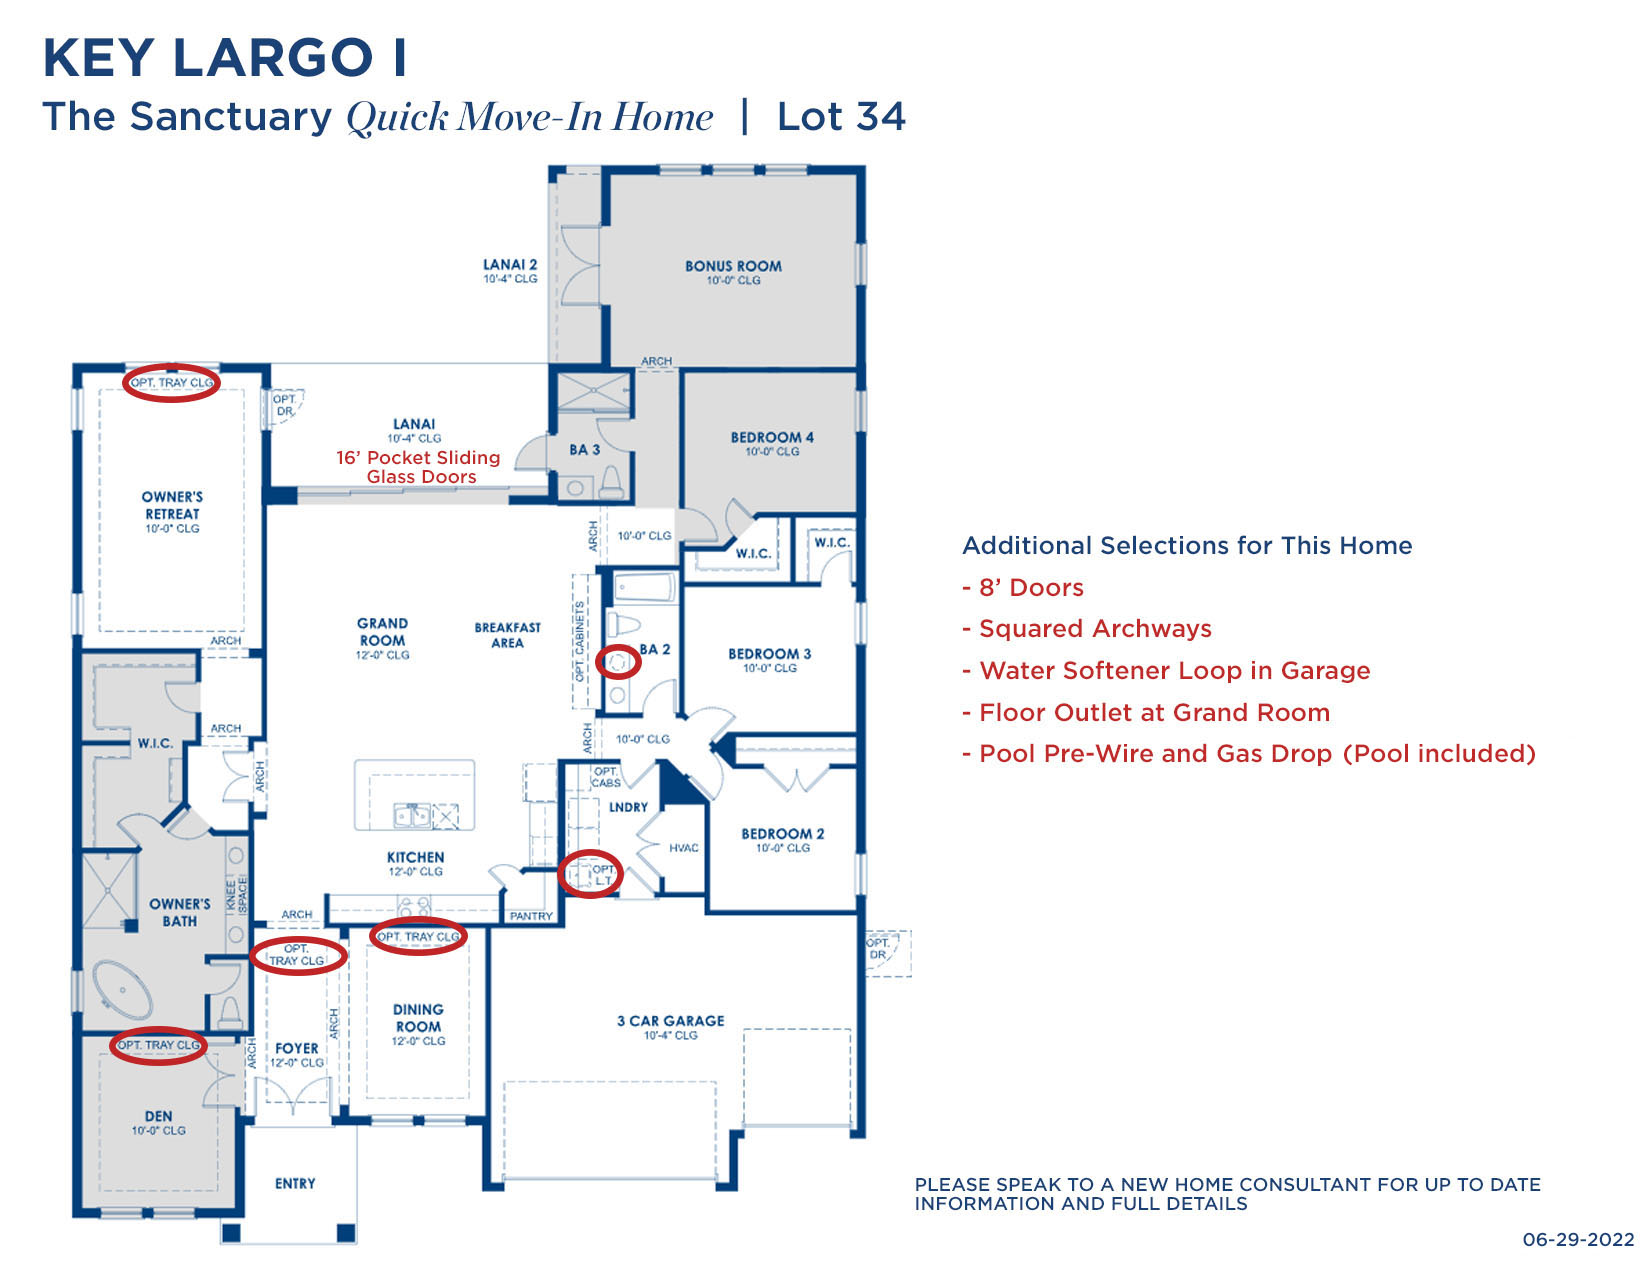 TS KEY LARGO I 34 6.29.22 Floorplan